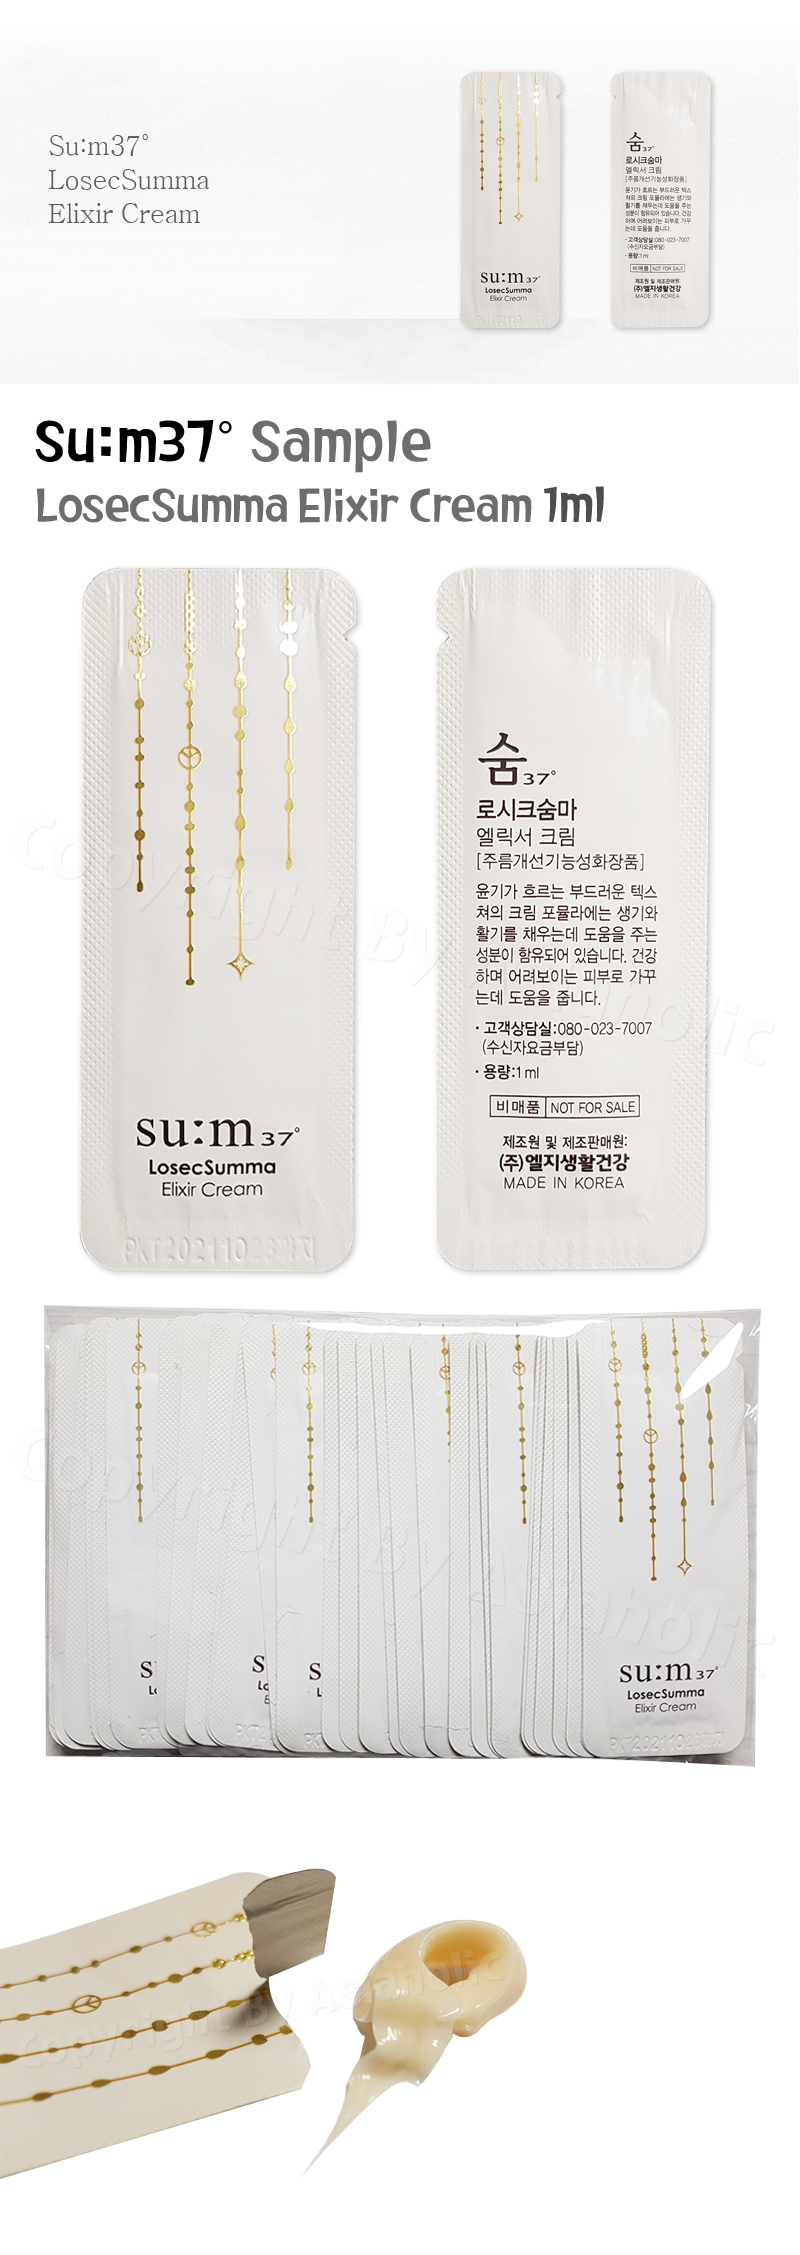 SU:M37 LosecSumma Elixir Cream 1ml (10pcs ~ 150pcs) Sample Sum37 Newest Version